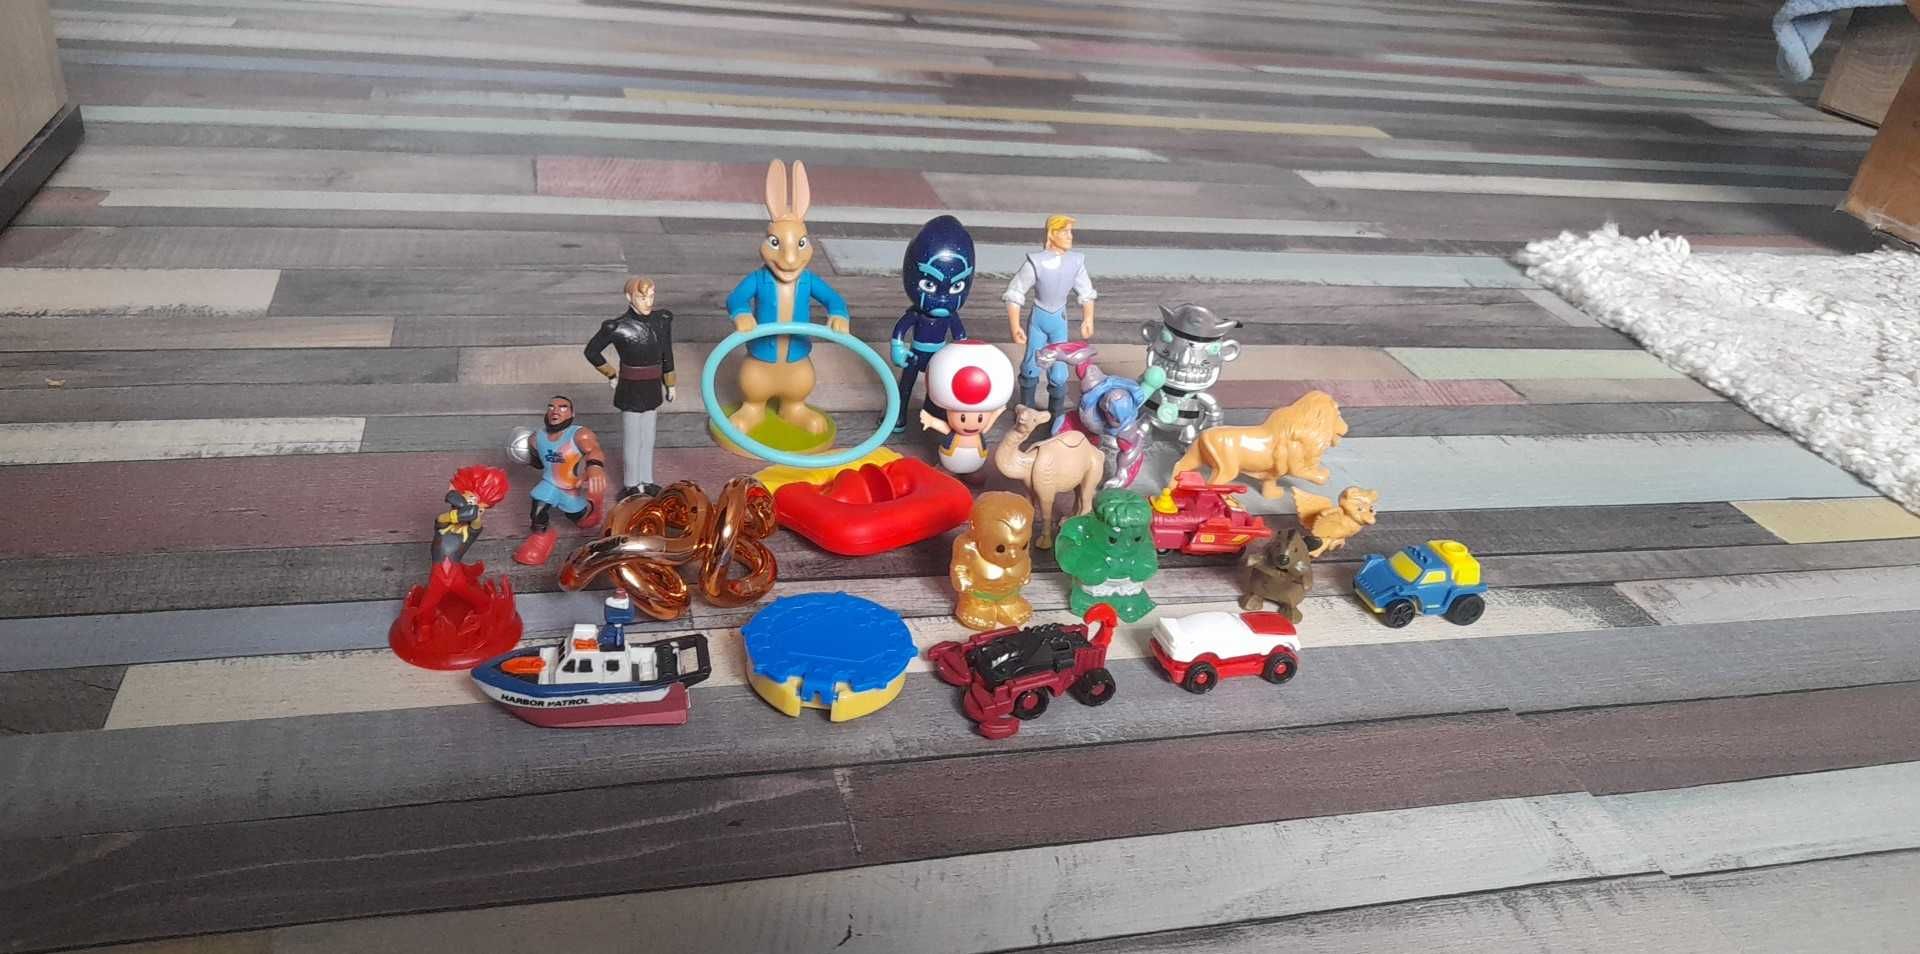 Loturide jucarii si figurine pentru copii si colectionari